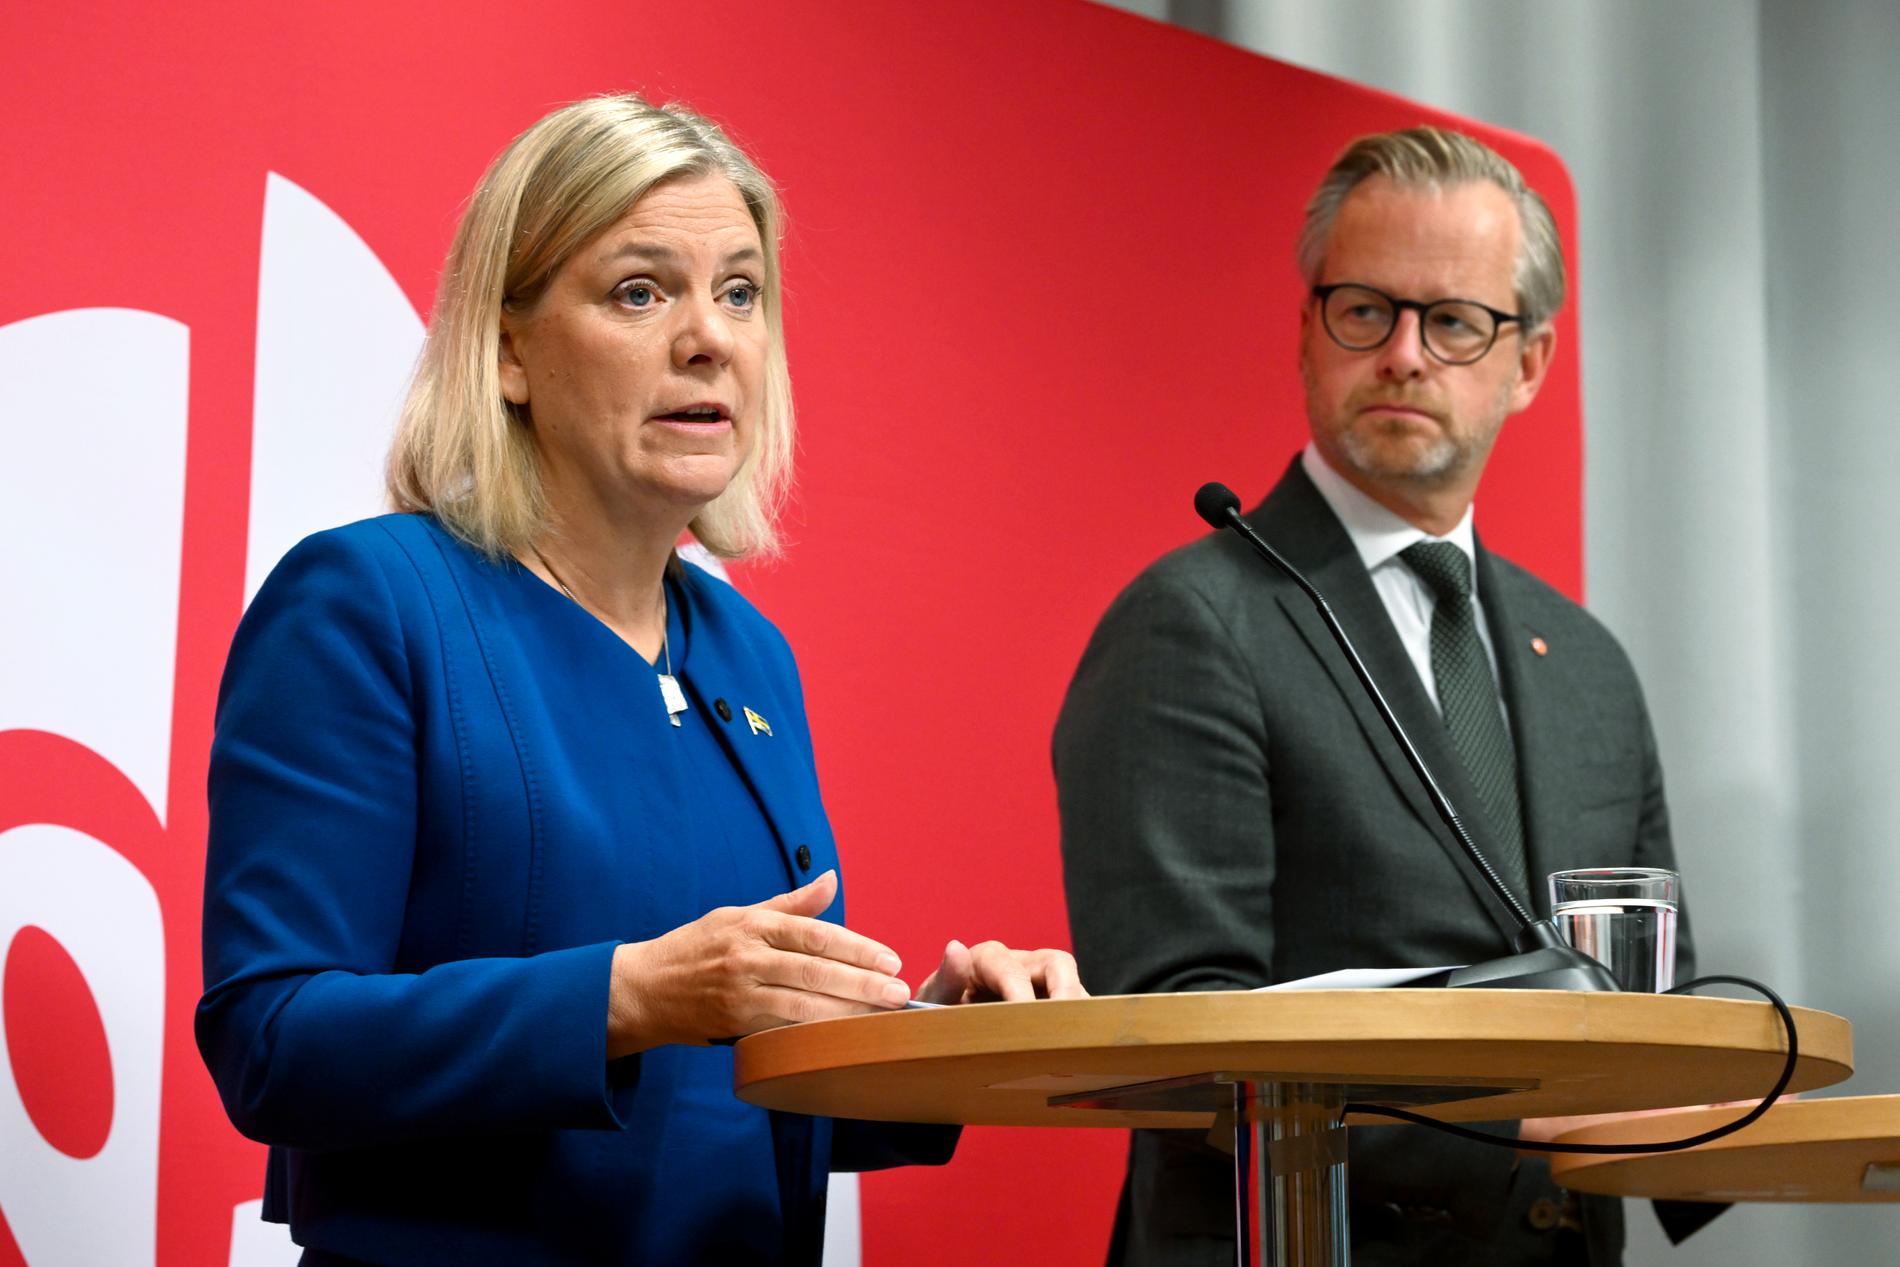 Socialdemokraternas valmanifest presenterades av Magdalena Andersson och Mikael Damberg den 25 augusti, arton dagar före valdagen. För den som letar finns det flera reformförslag.